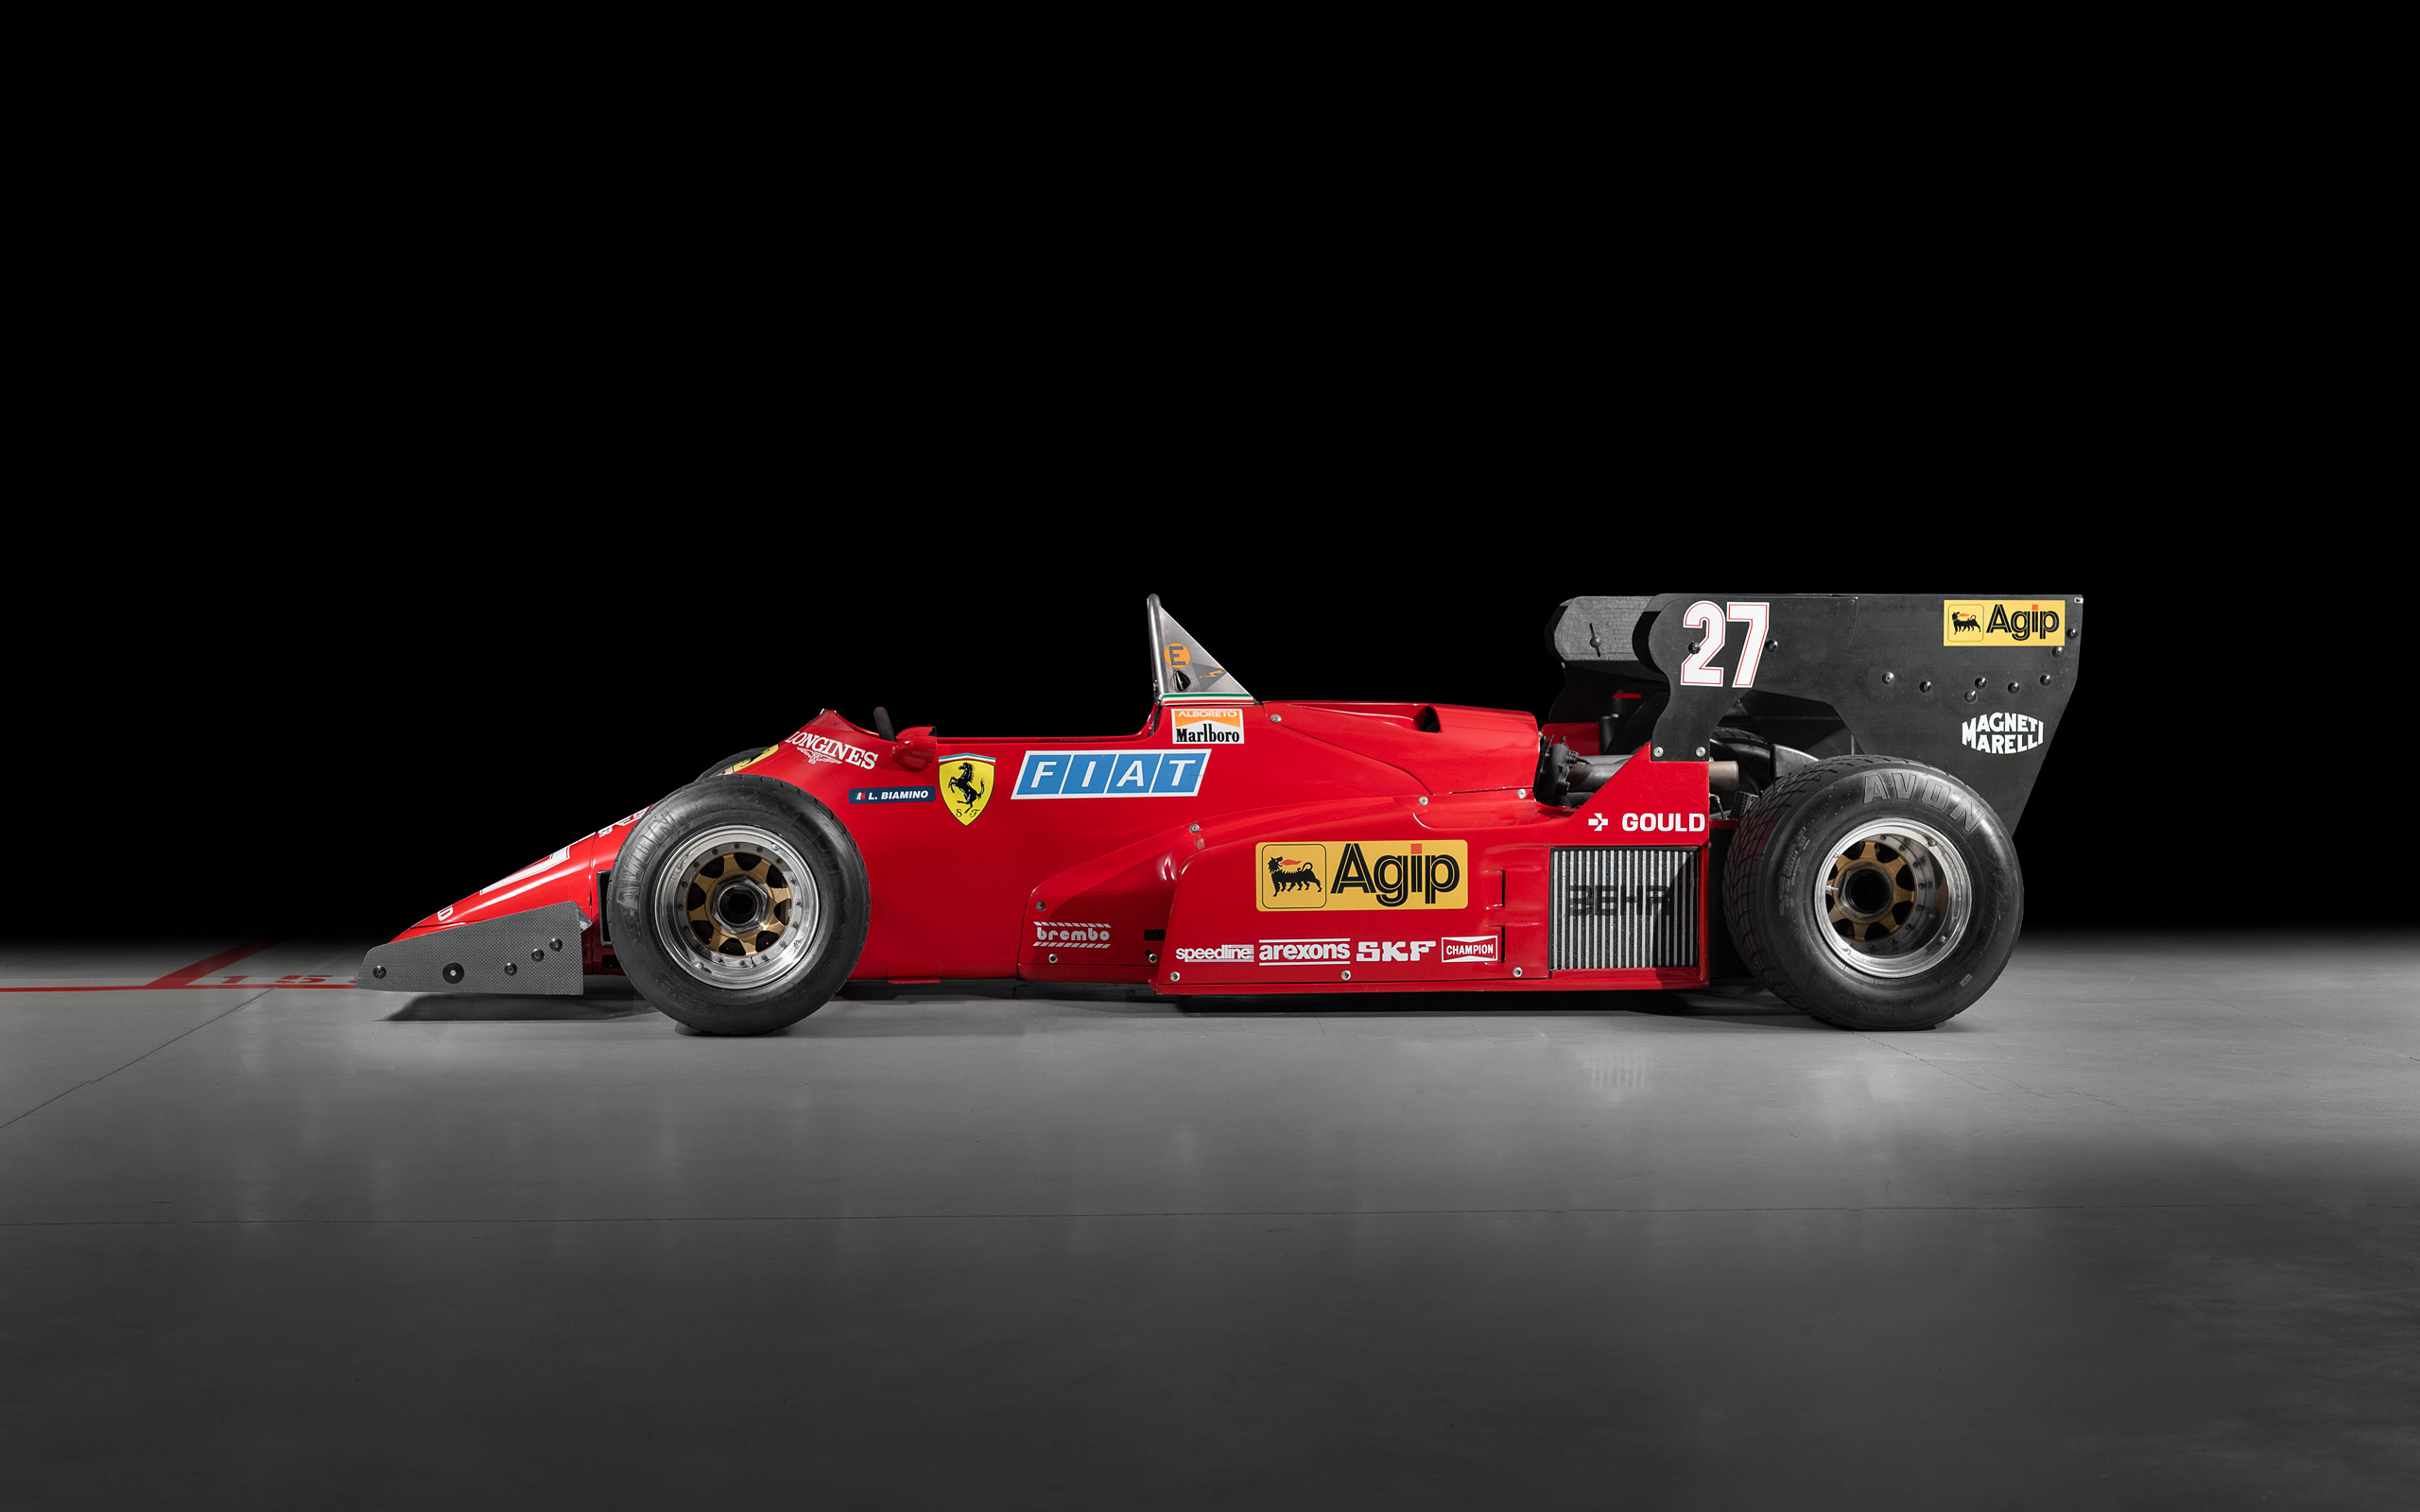  1984 Ferrari 126 C4 Wallpaper.